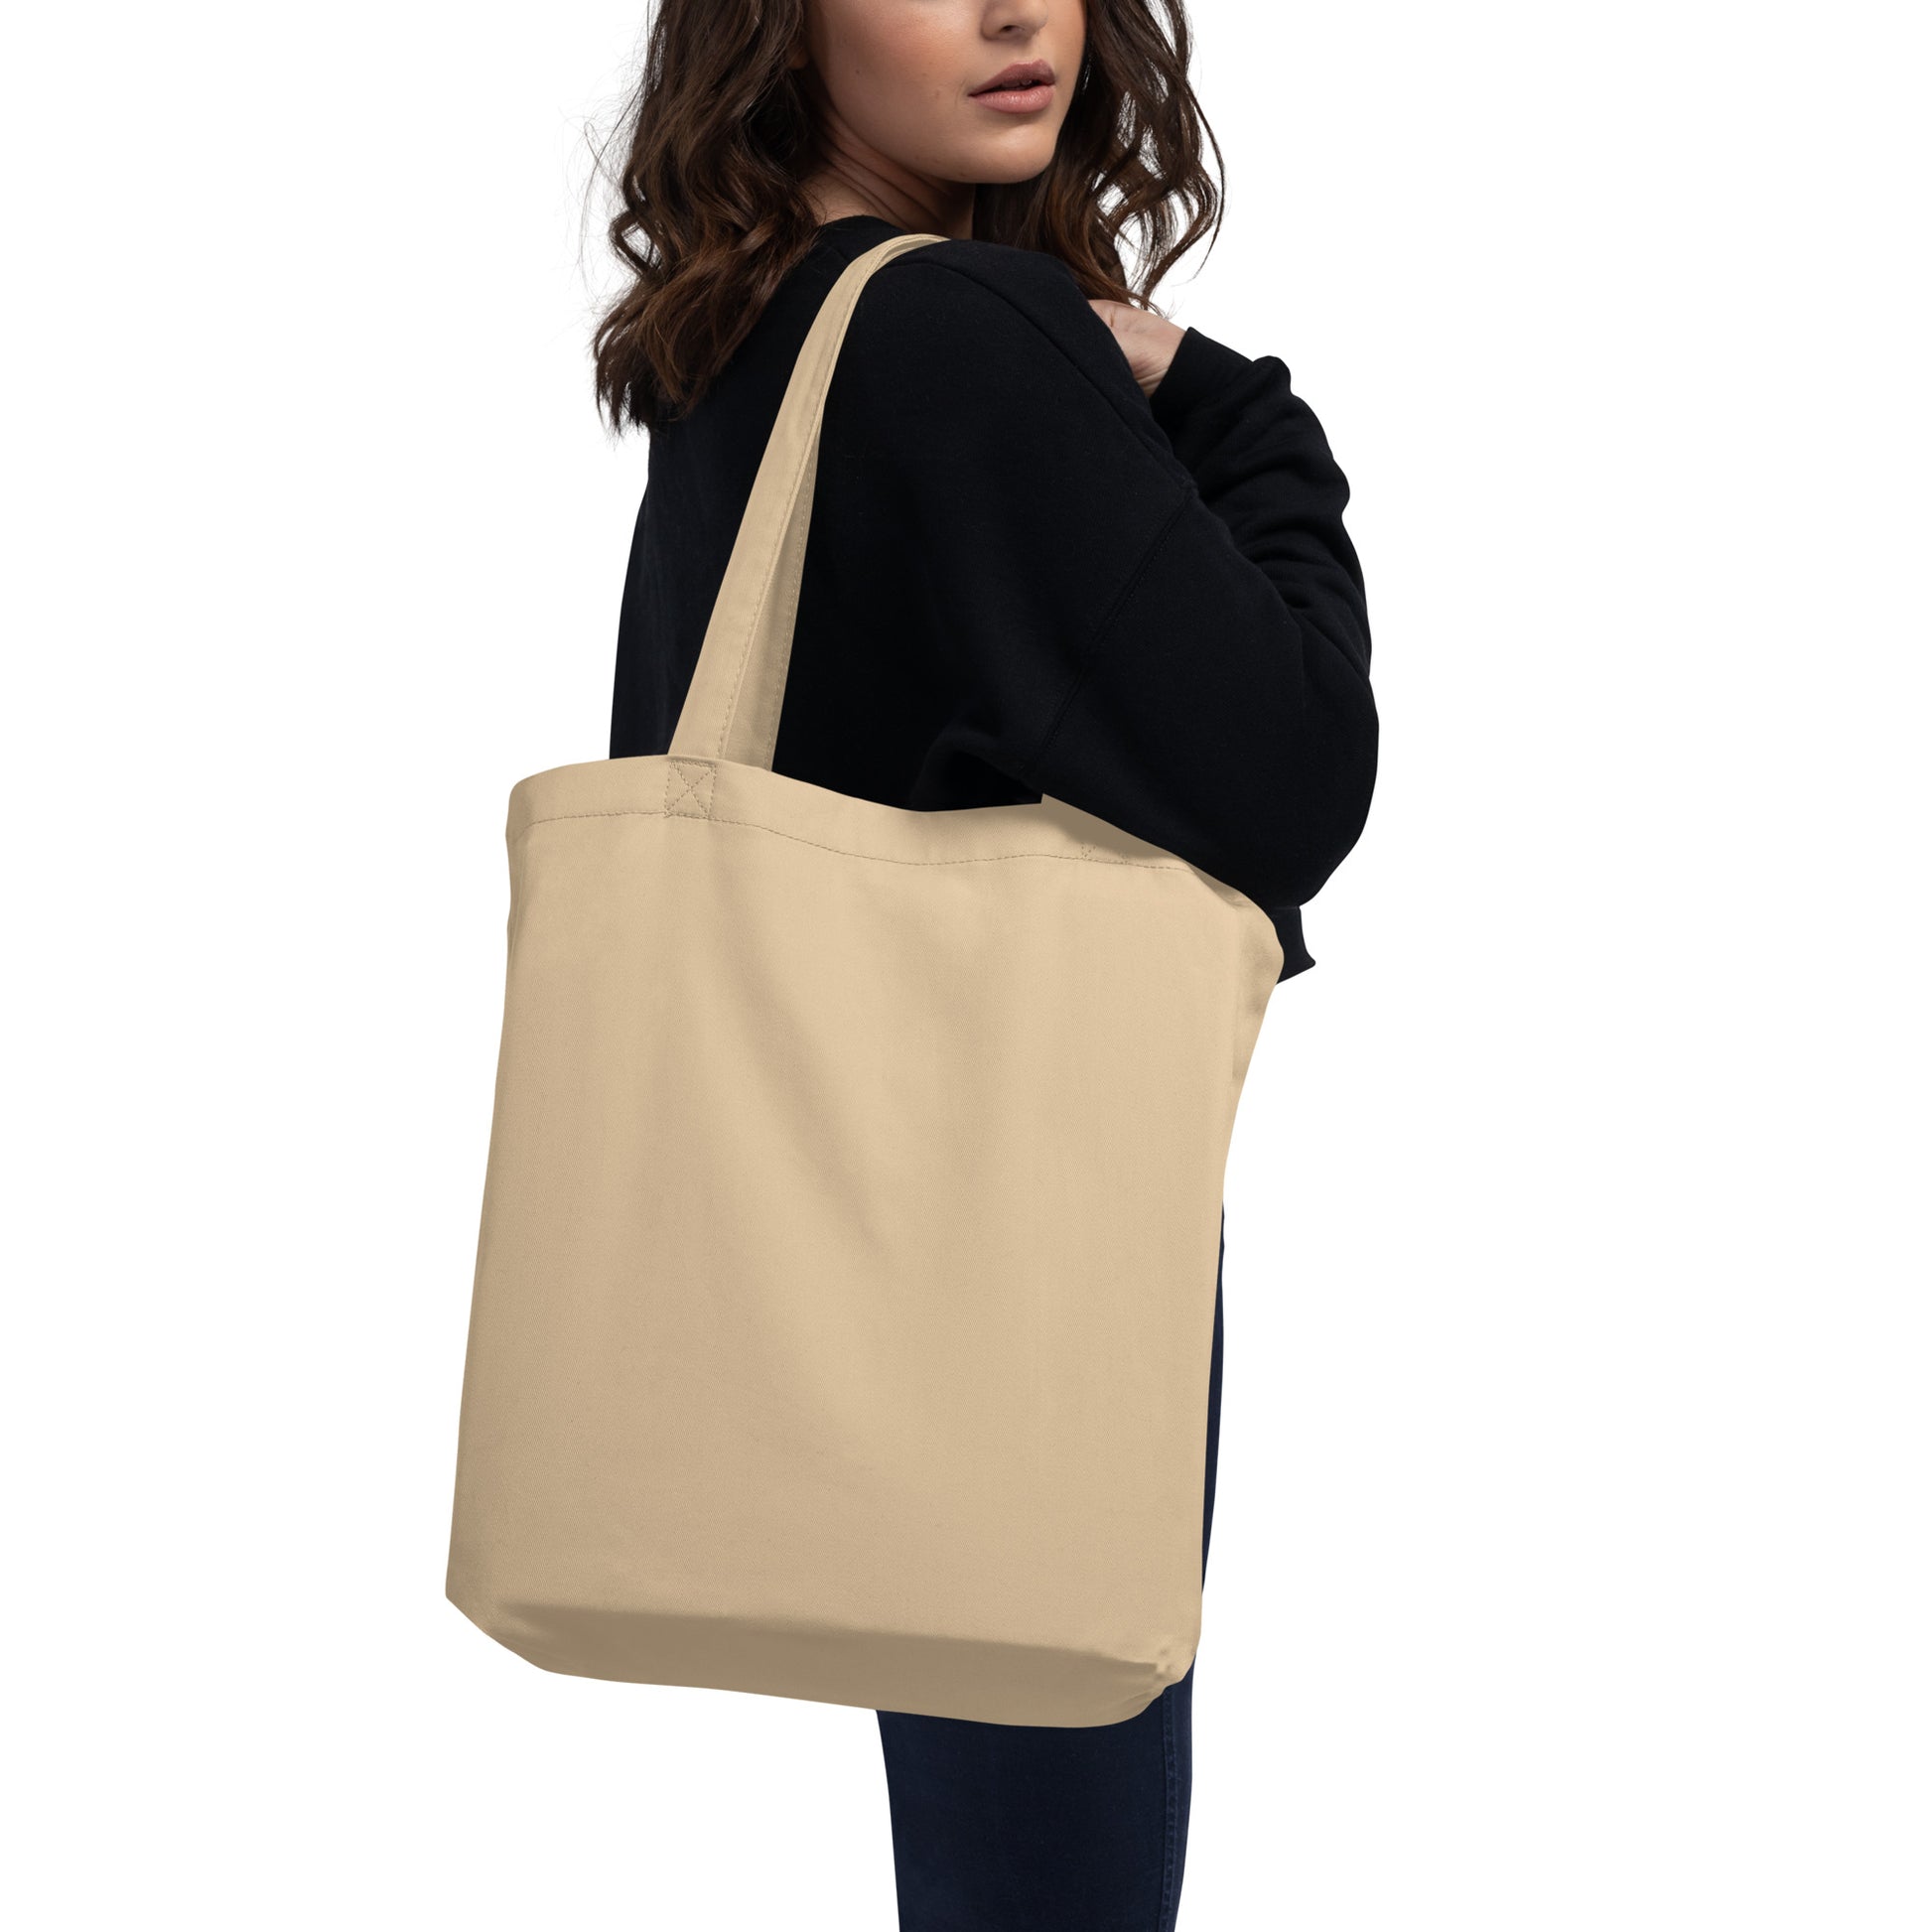 Cool Travel Gift Organic Tote Bag - Viking Blue • CDG Paris • YHM Designs - Image 06